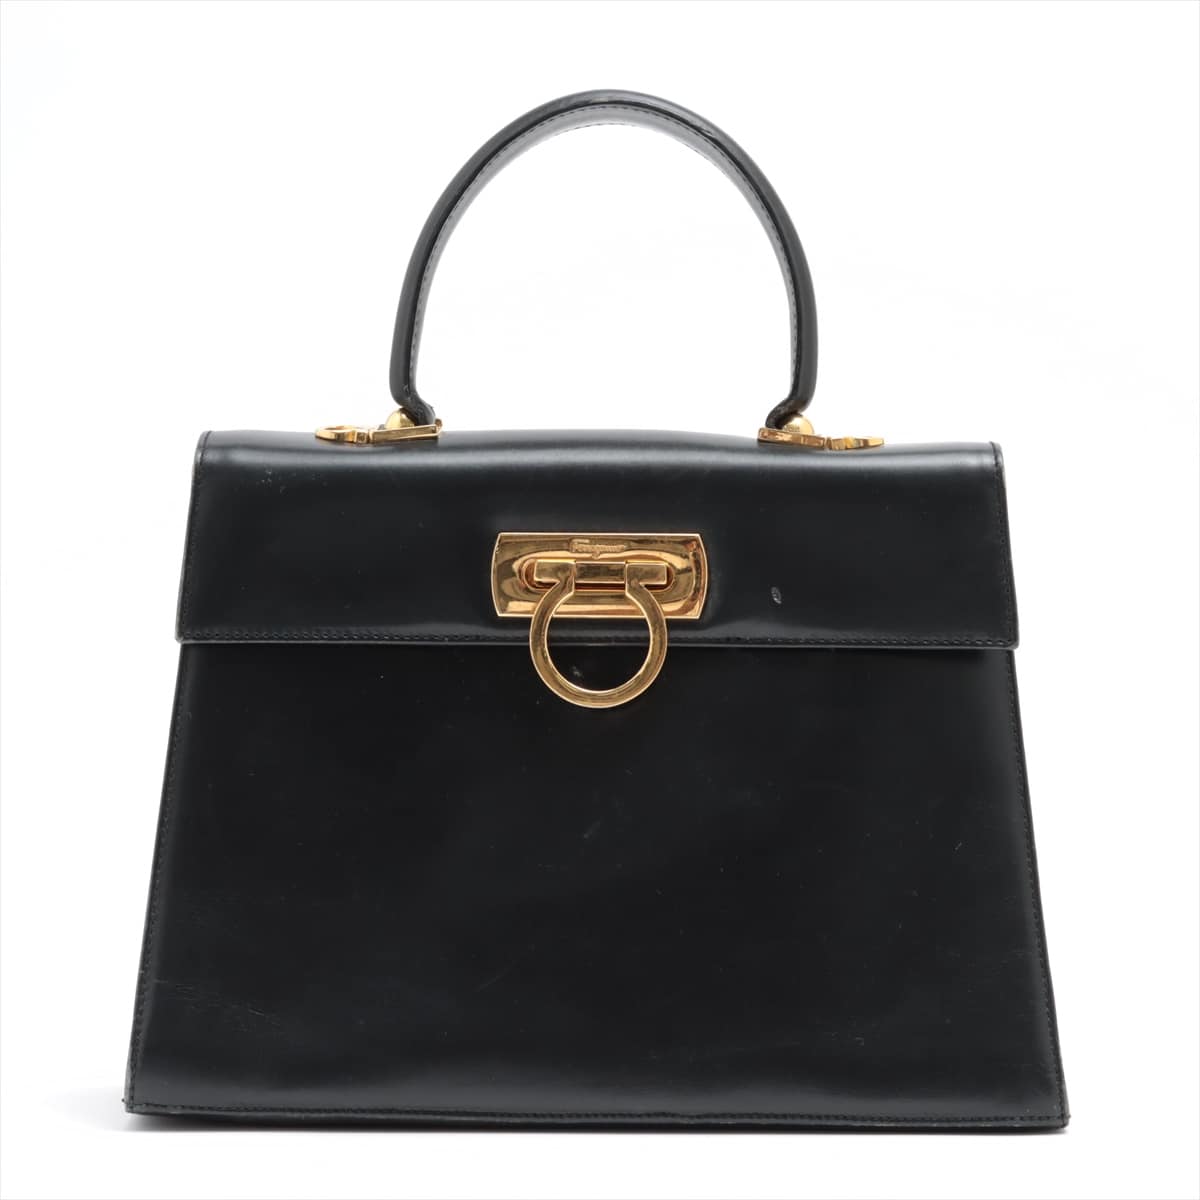 Ferragamo Gancini Leather Hand bag Black